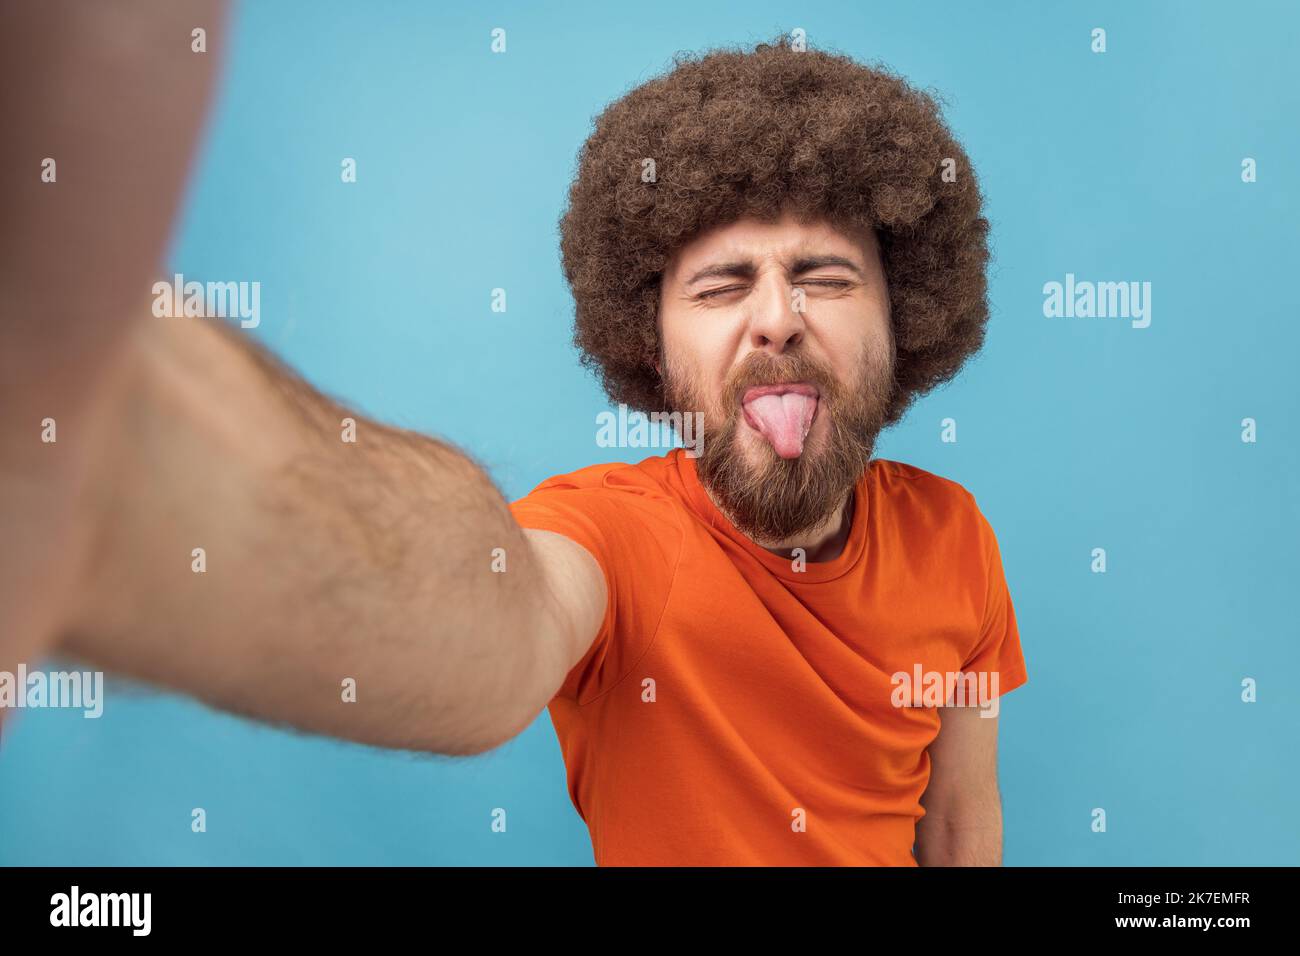 Porträt eines kindisch albernen Mannes mit Afro-Frisur in orangefarbenem T-Shirt, der Selfie macht oder Livestream macht, die Zunge zeigt, Sichtfoto. Innenaufnahme des Studios isoliert auf blauem Hintergrund. Stockfoto